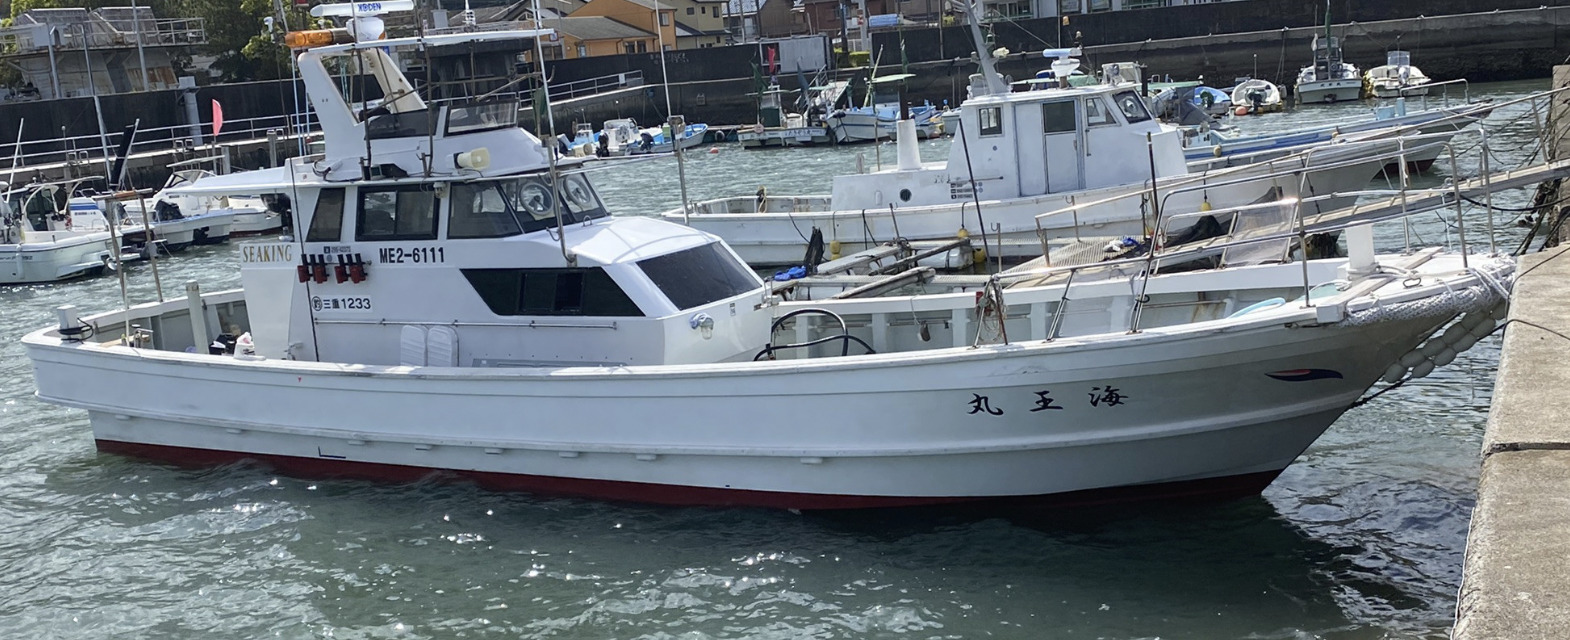 Sea king 海王丸